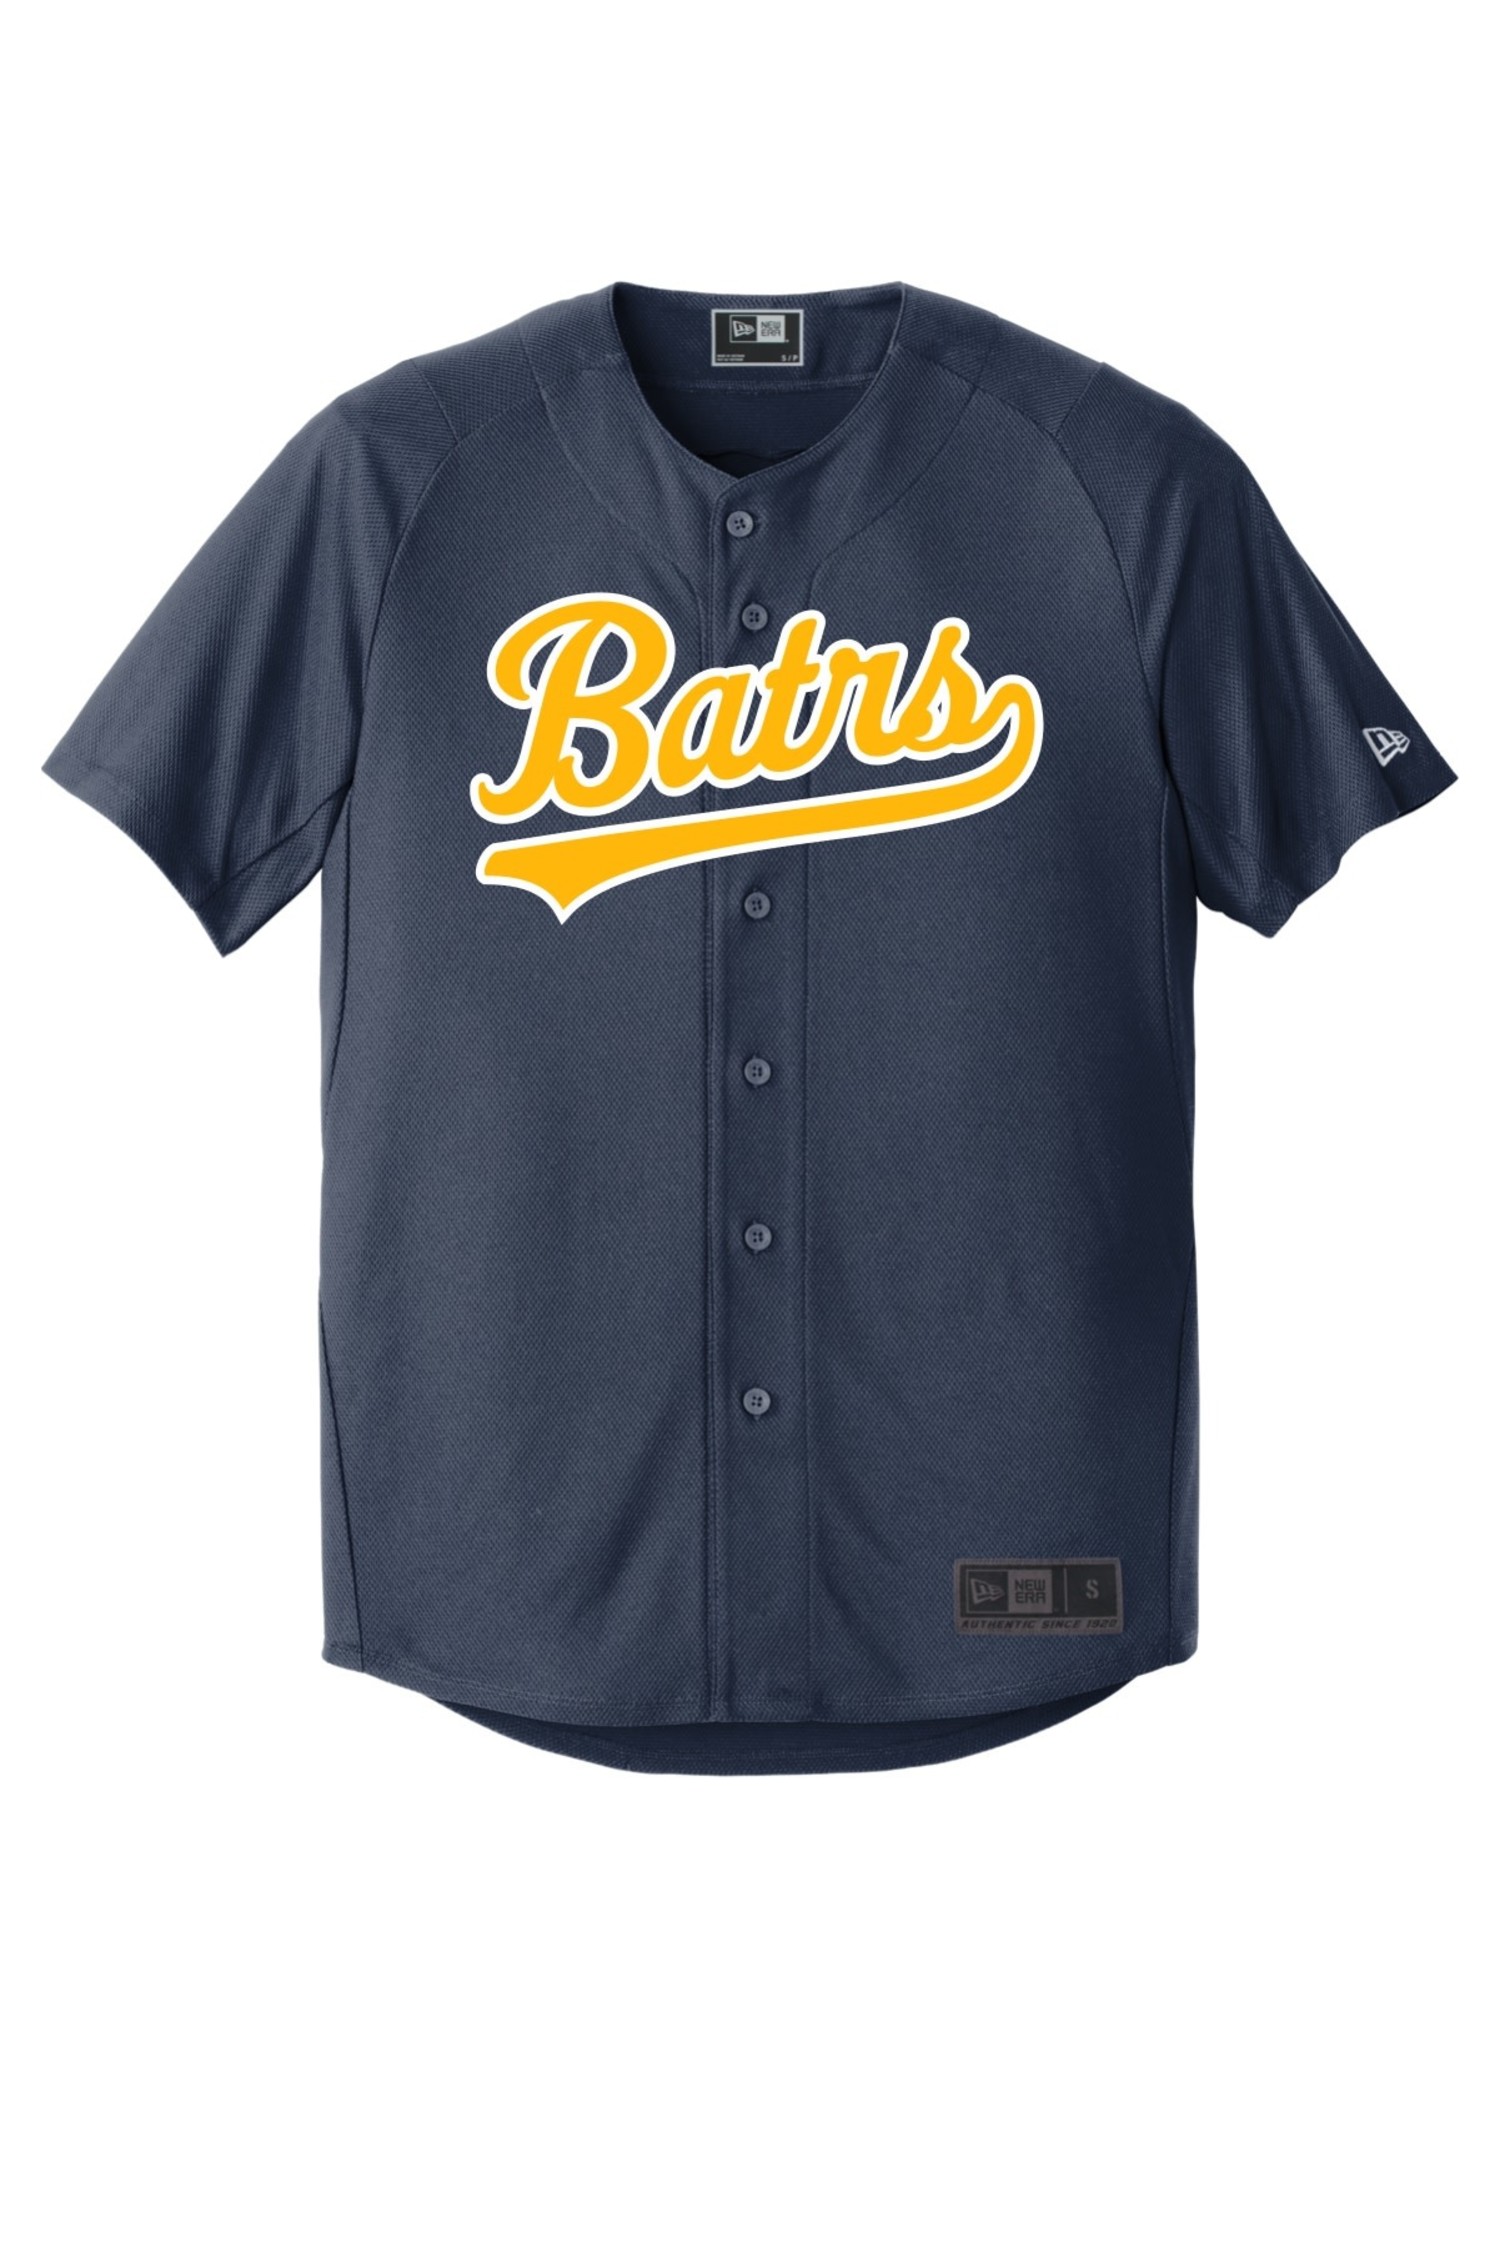 NP-BSB-003 Men'S Full Button Front Sleeveless Baseball Jersey